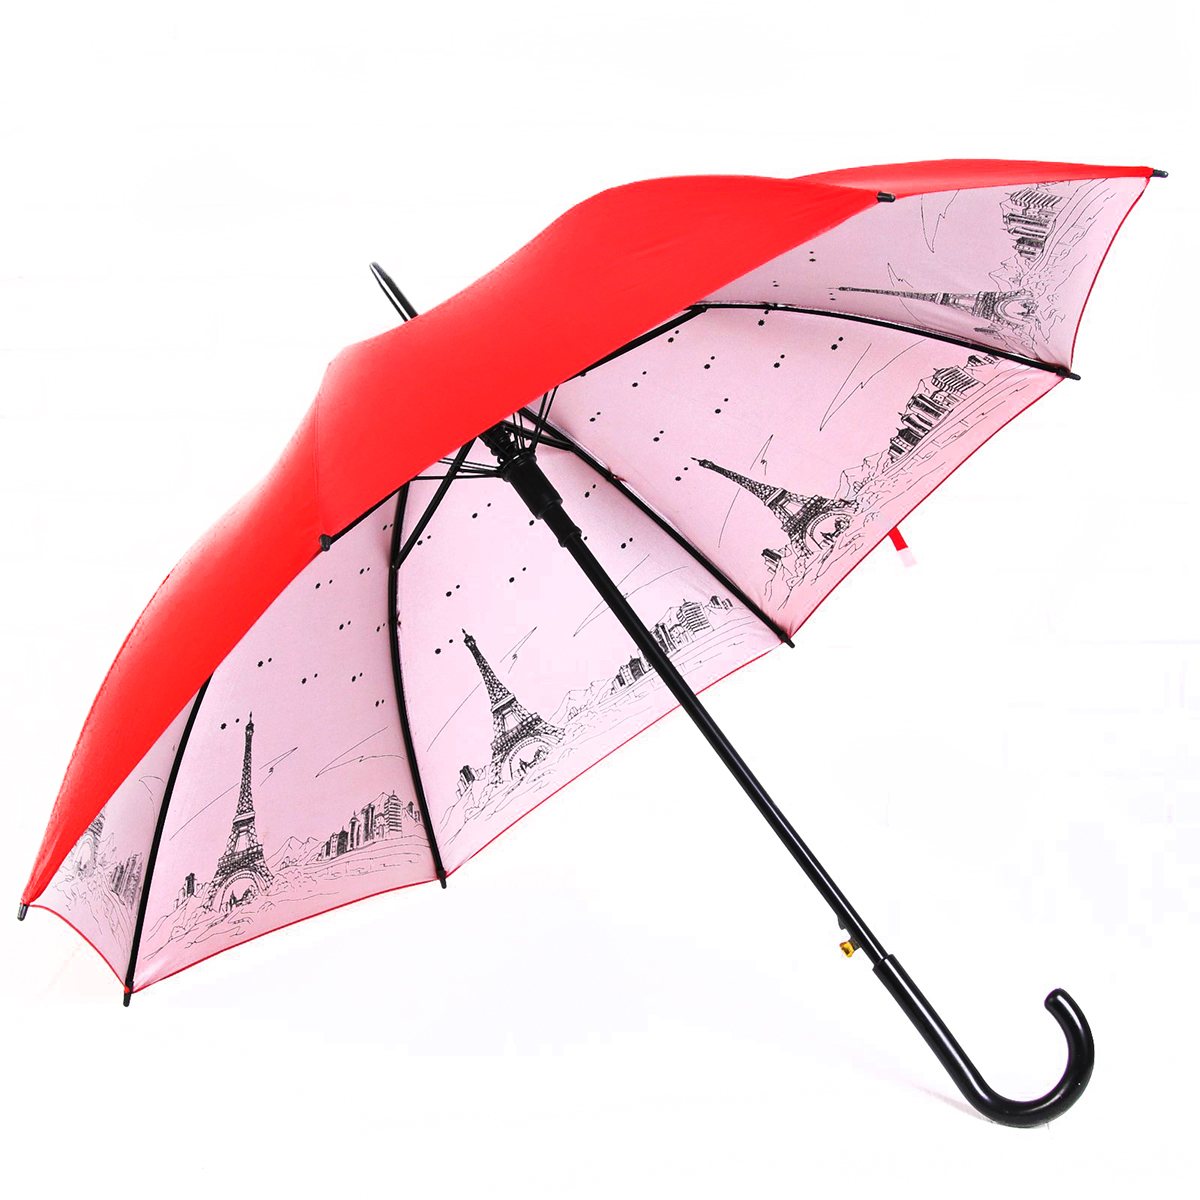 Имя зонтик. Ткань у зонтика как называется.